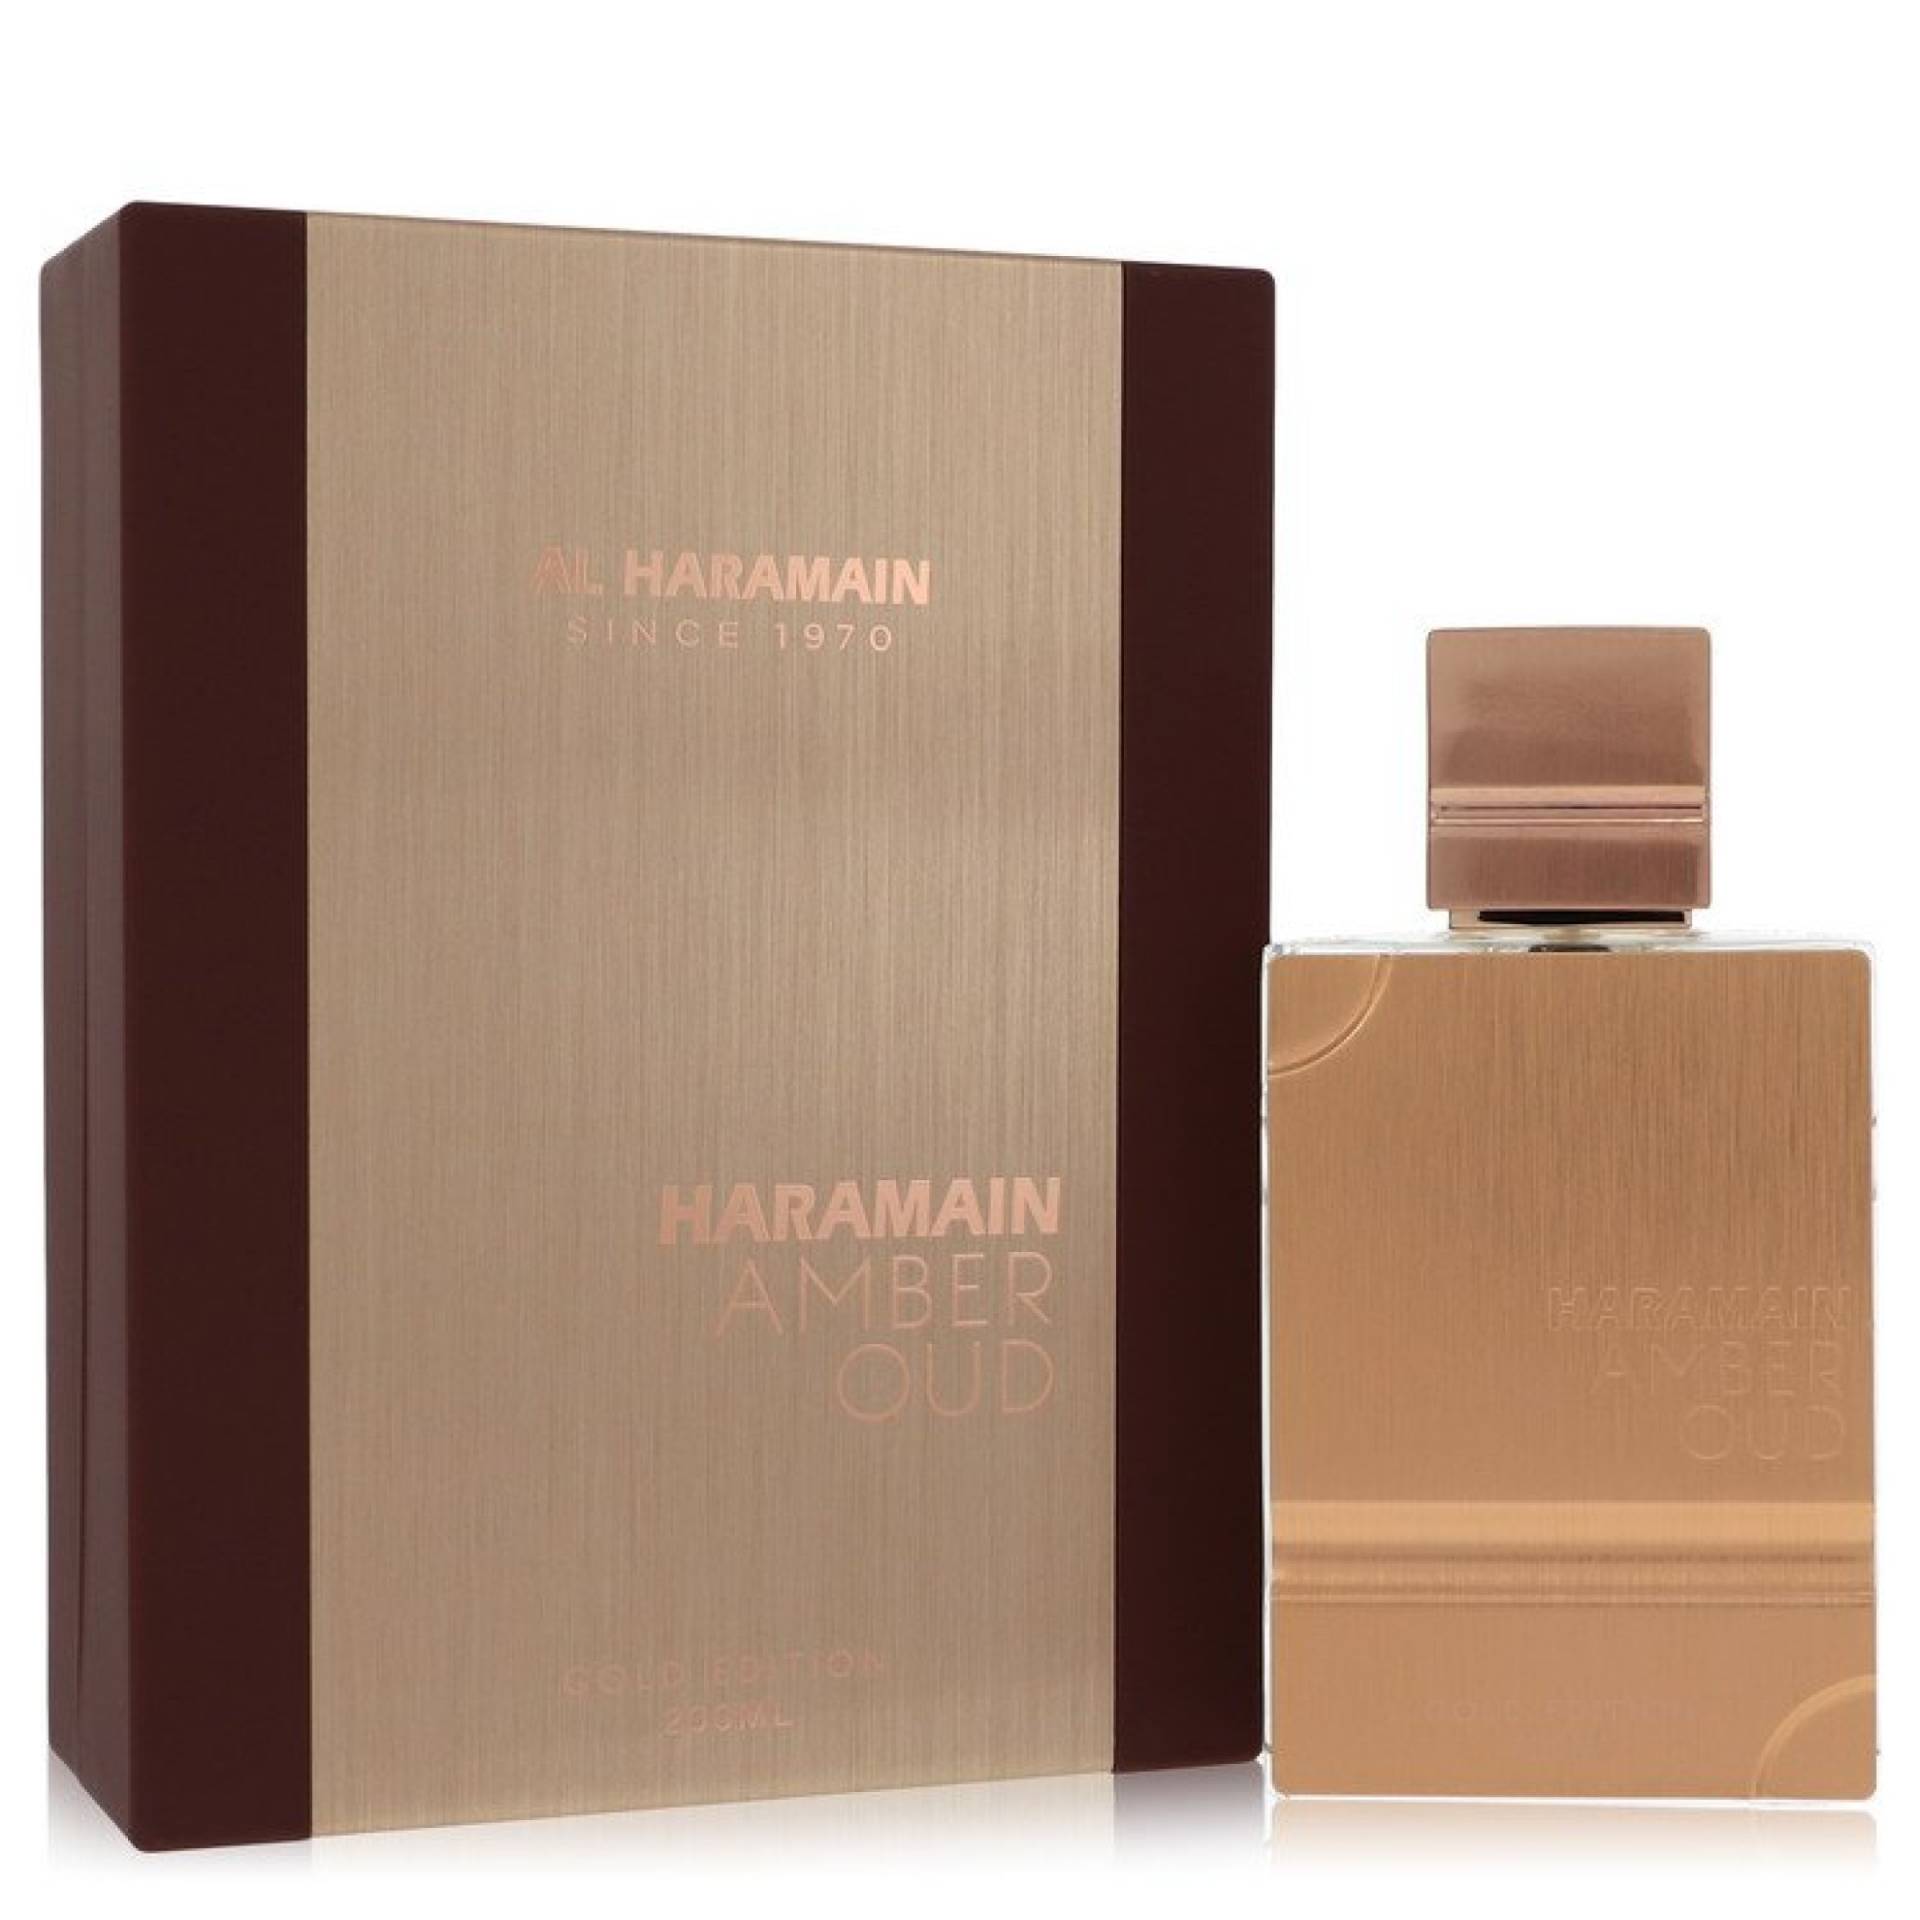 Al Haramain Amber Oud Gold Edition Eau De Parfum Spray (Unisex) 198 ml von Al Haramain